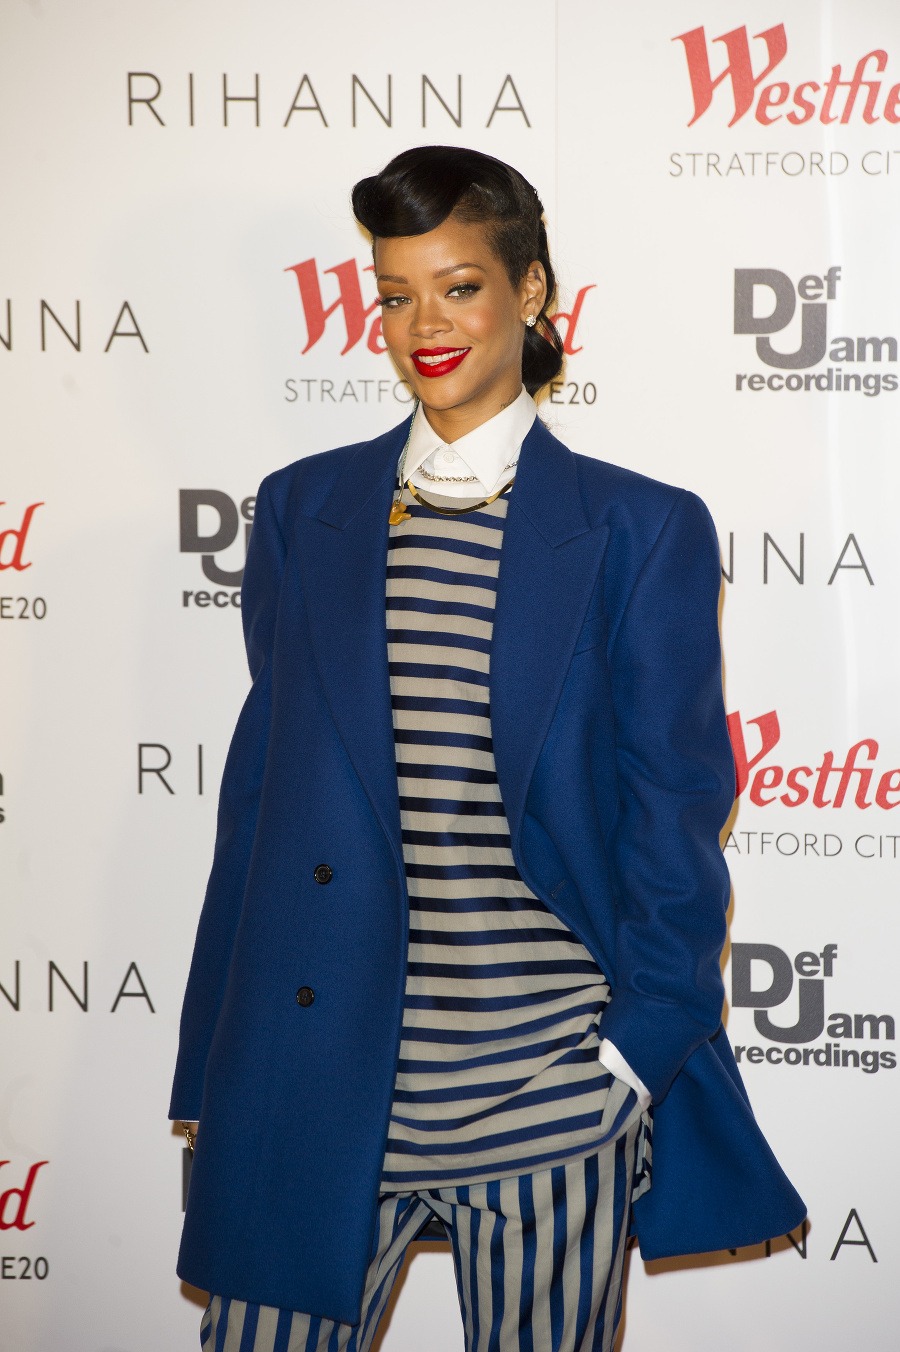 Škandalózna Rihanna bez cenzúry: Súkromné zábery ako z 